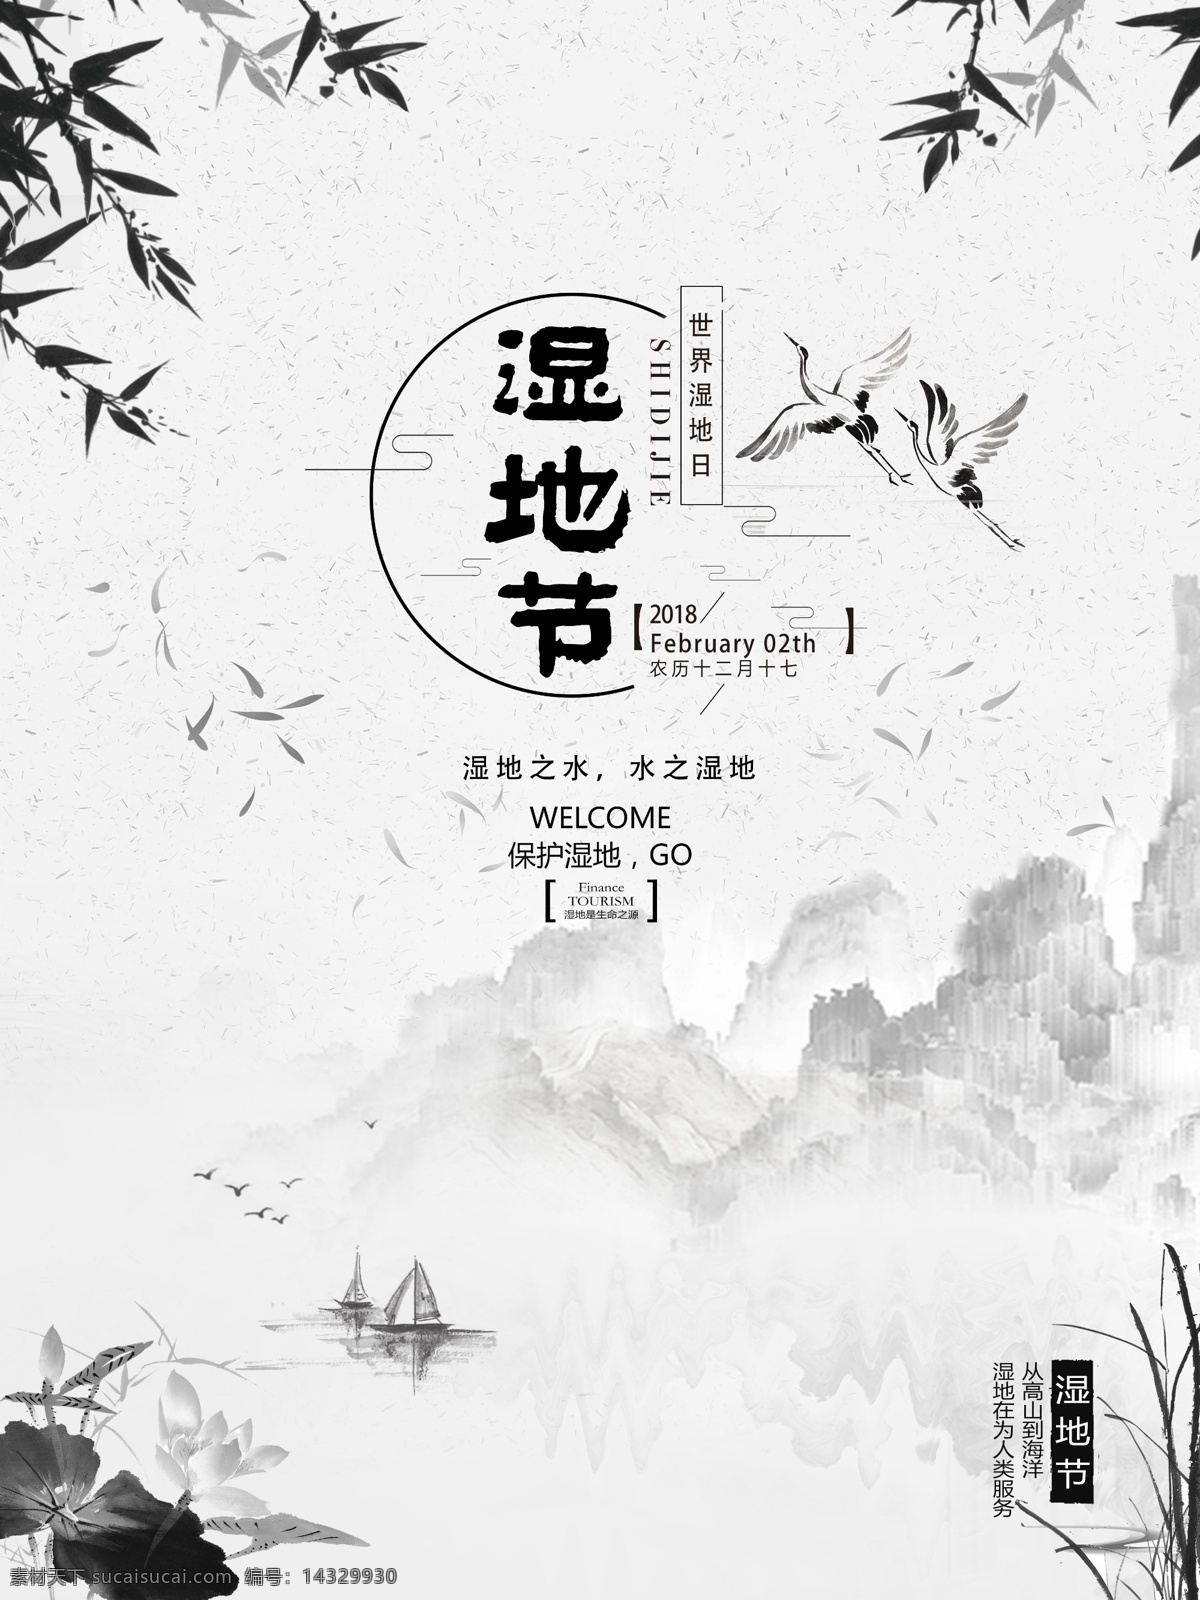 中国 水墨 风湿 节 节日 海报 保护湿地 节日海报 湿地 湿地节 水墨风 中国风